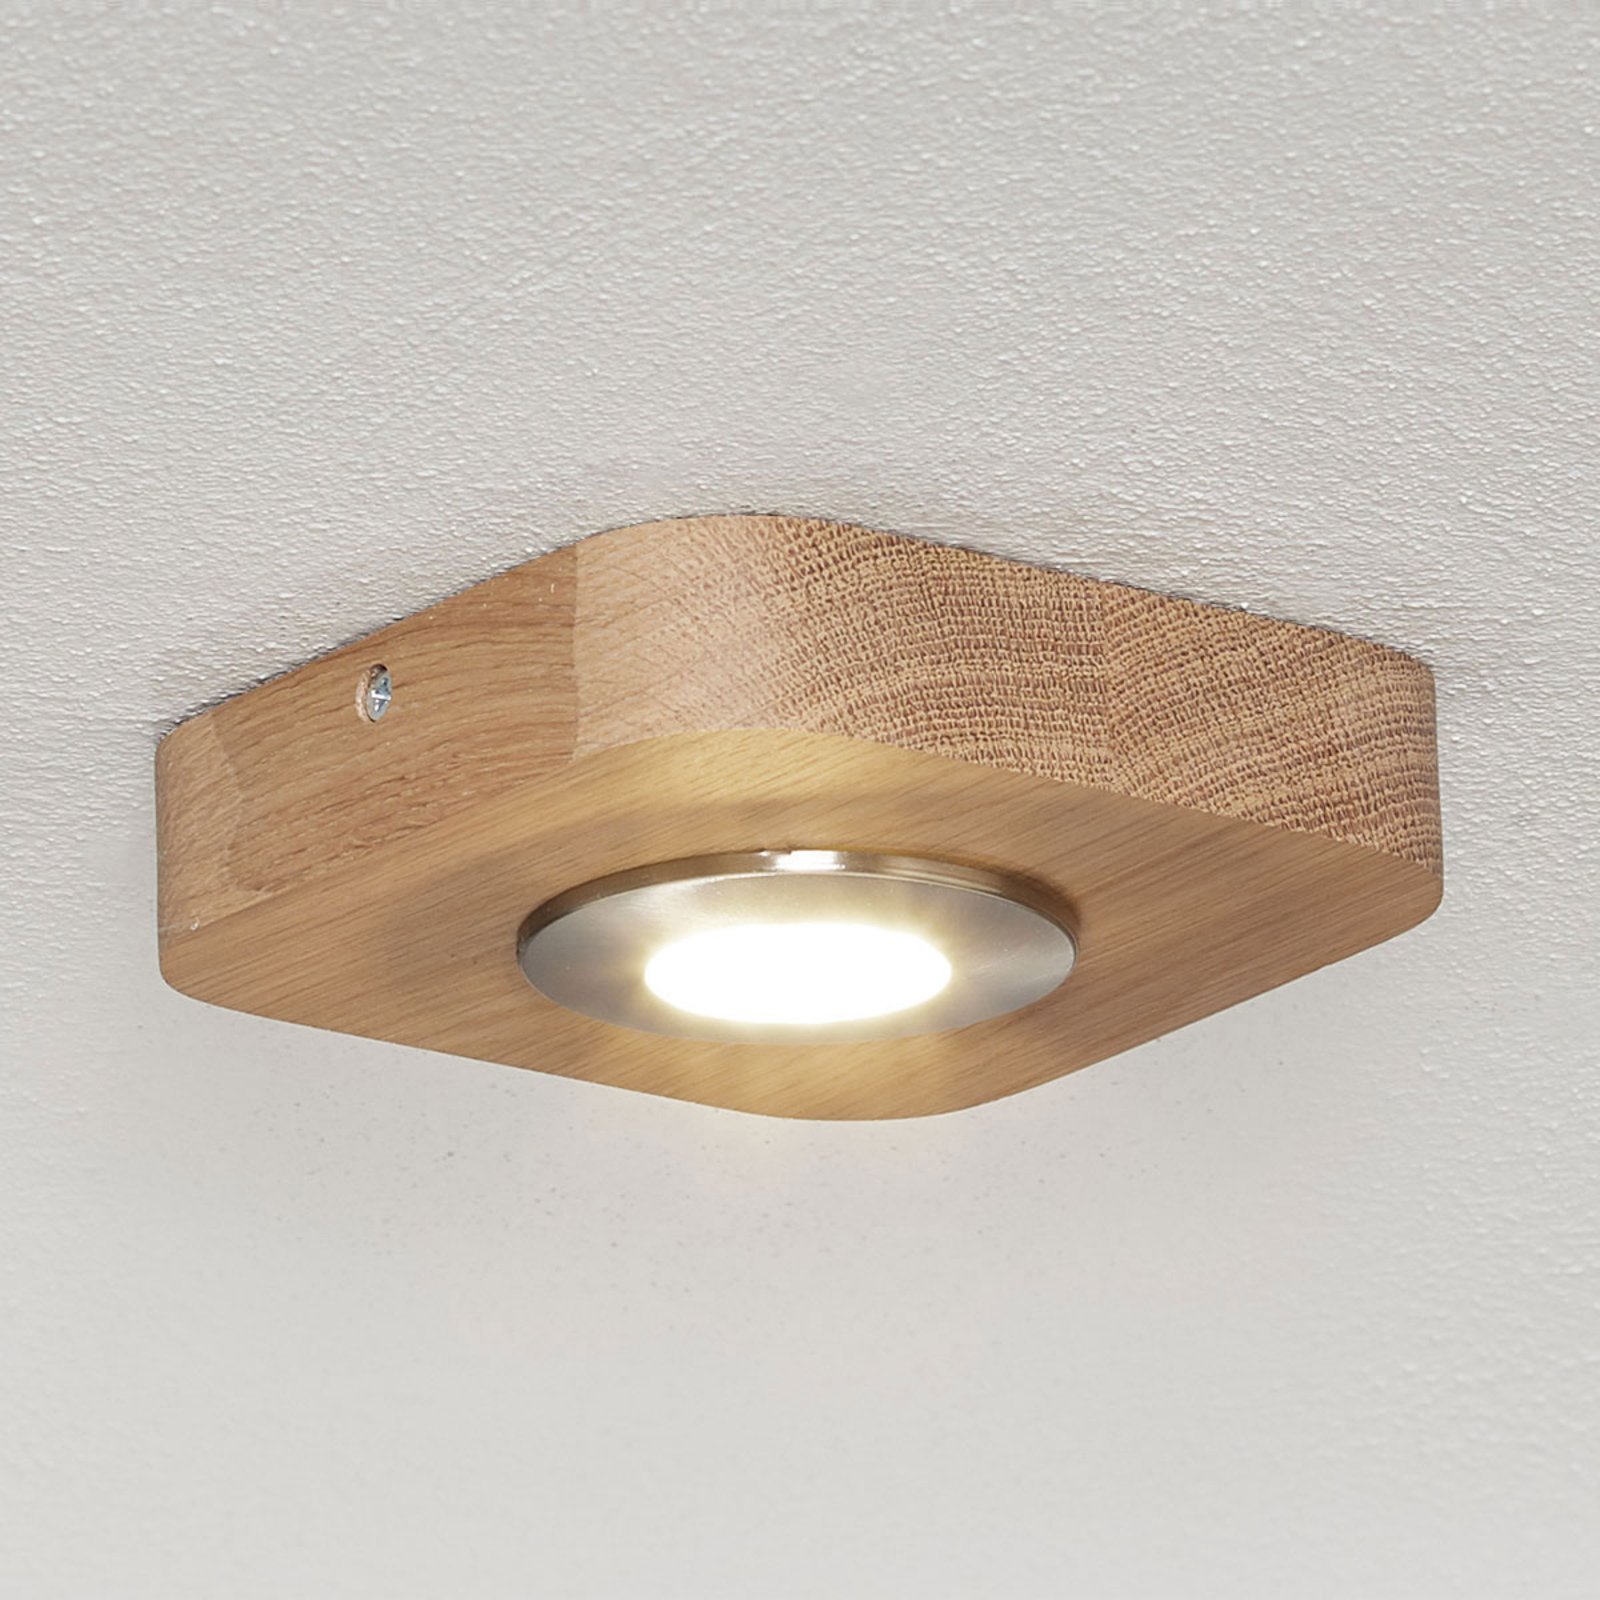 Warm white Sunniva LED ceiling light